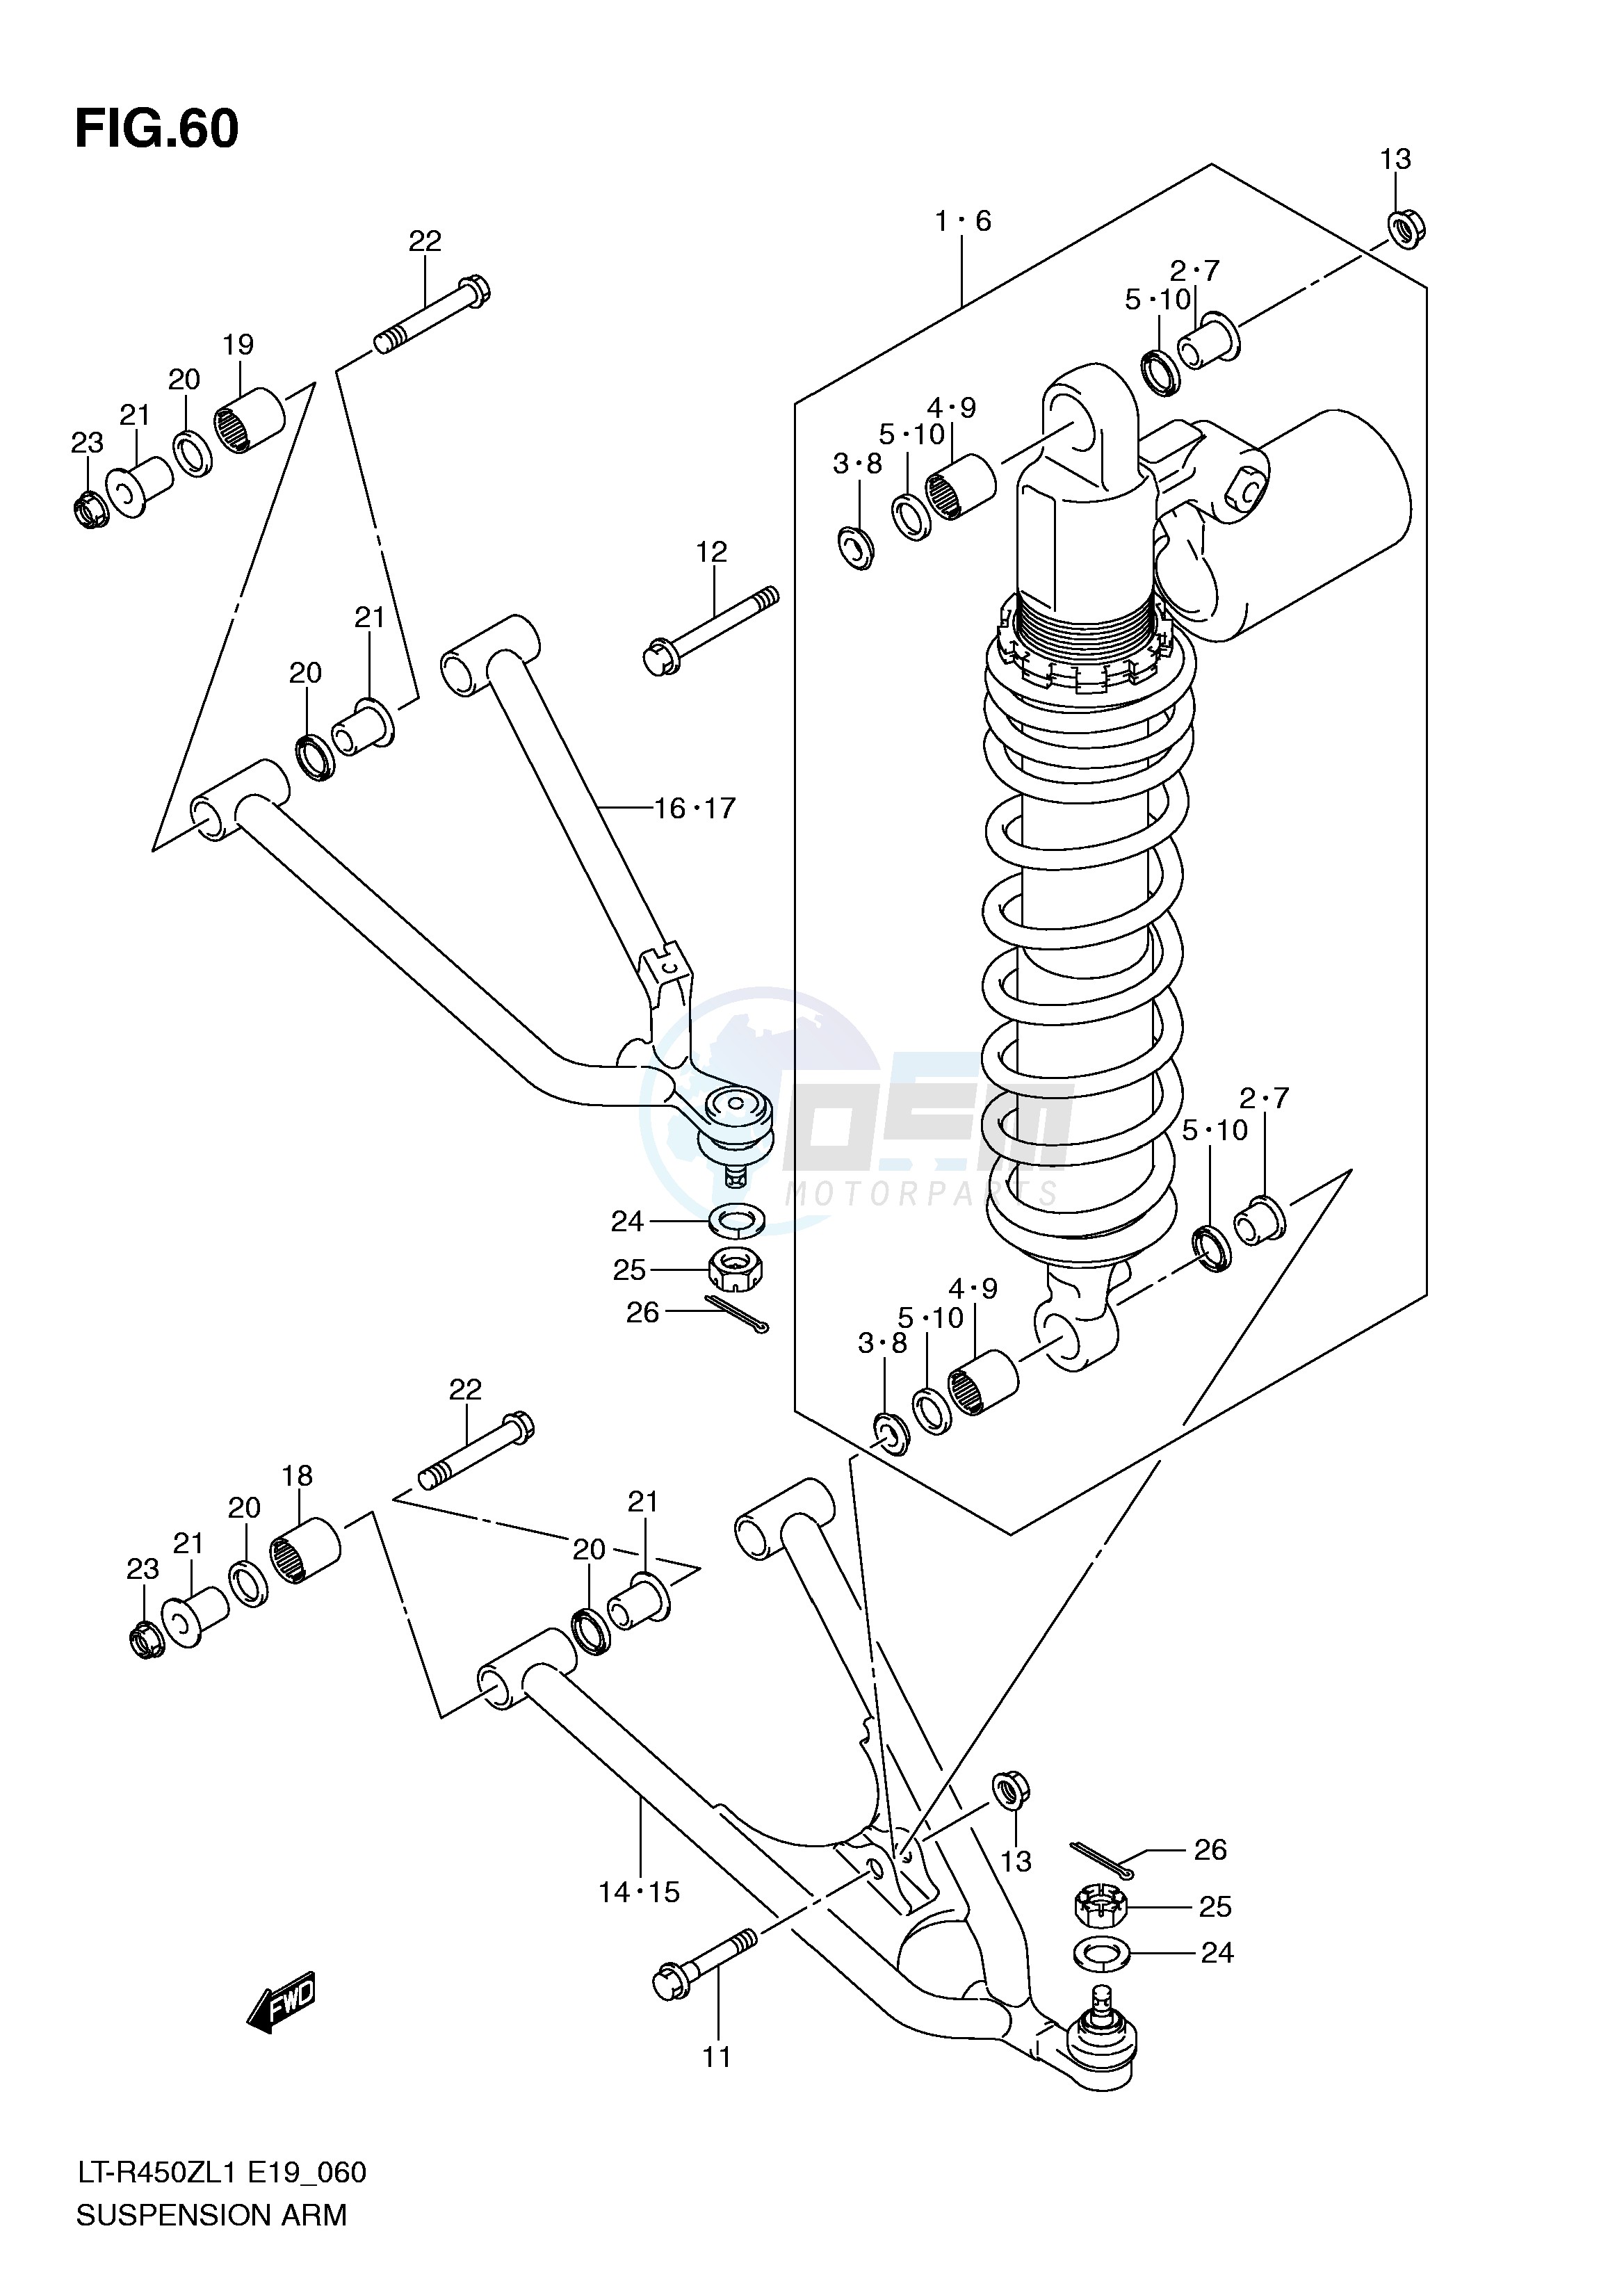 SUSPENSION ARM (LT-R450L1 E19) blueprint